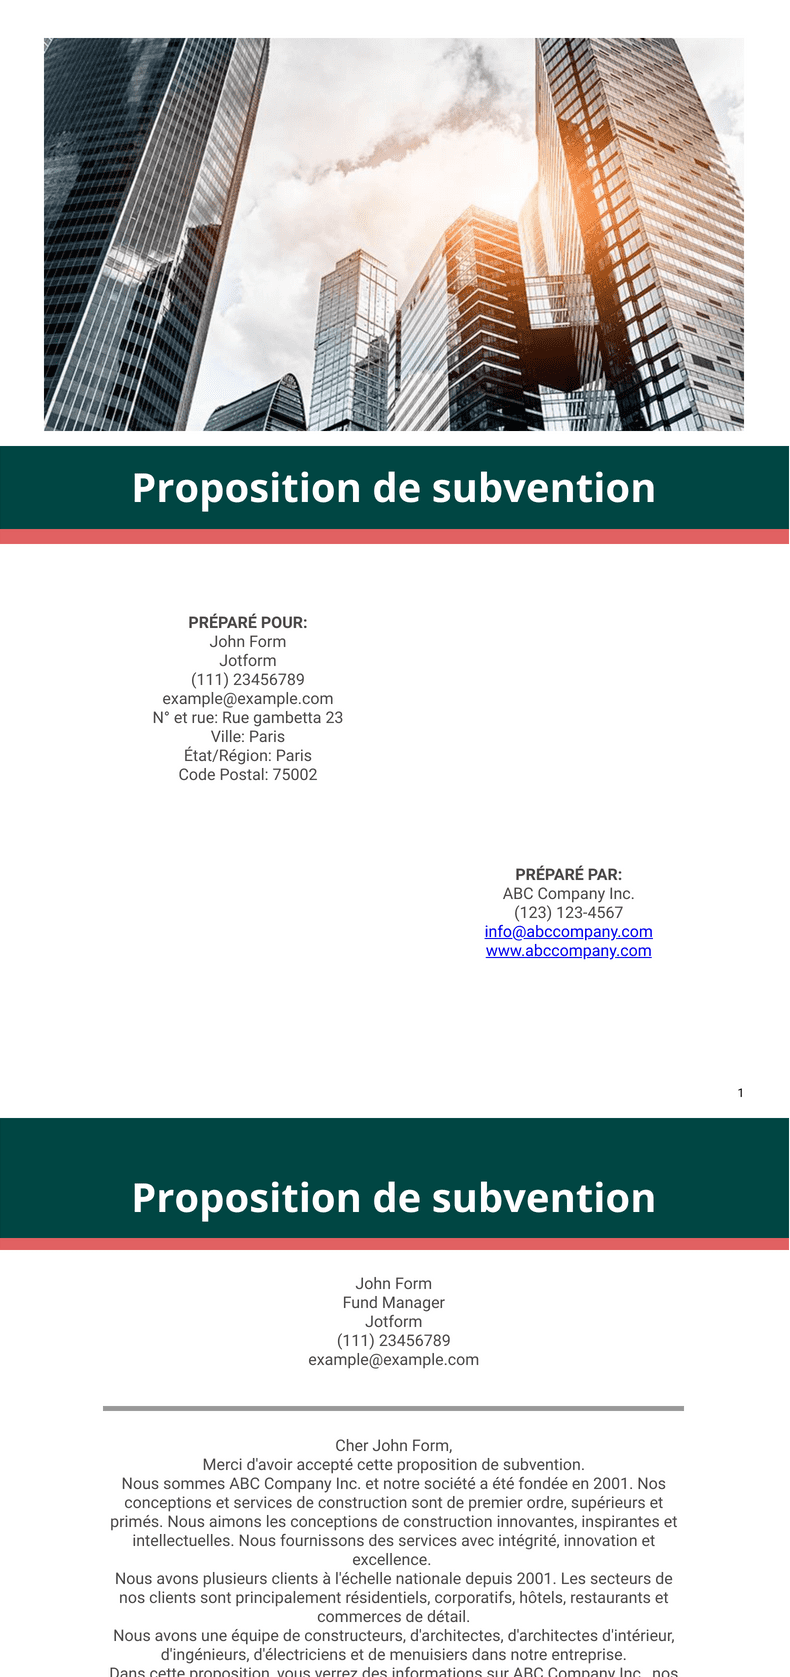 PDF Templates: Proposition de subvention